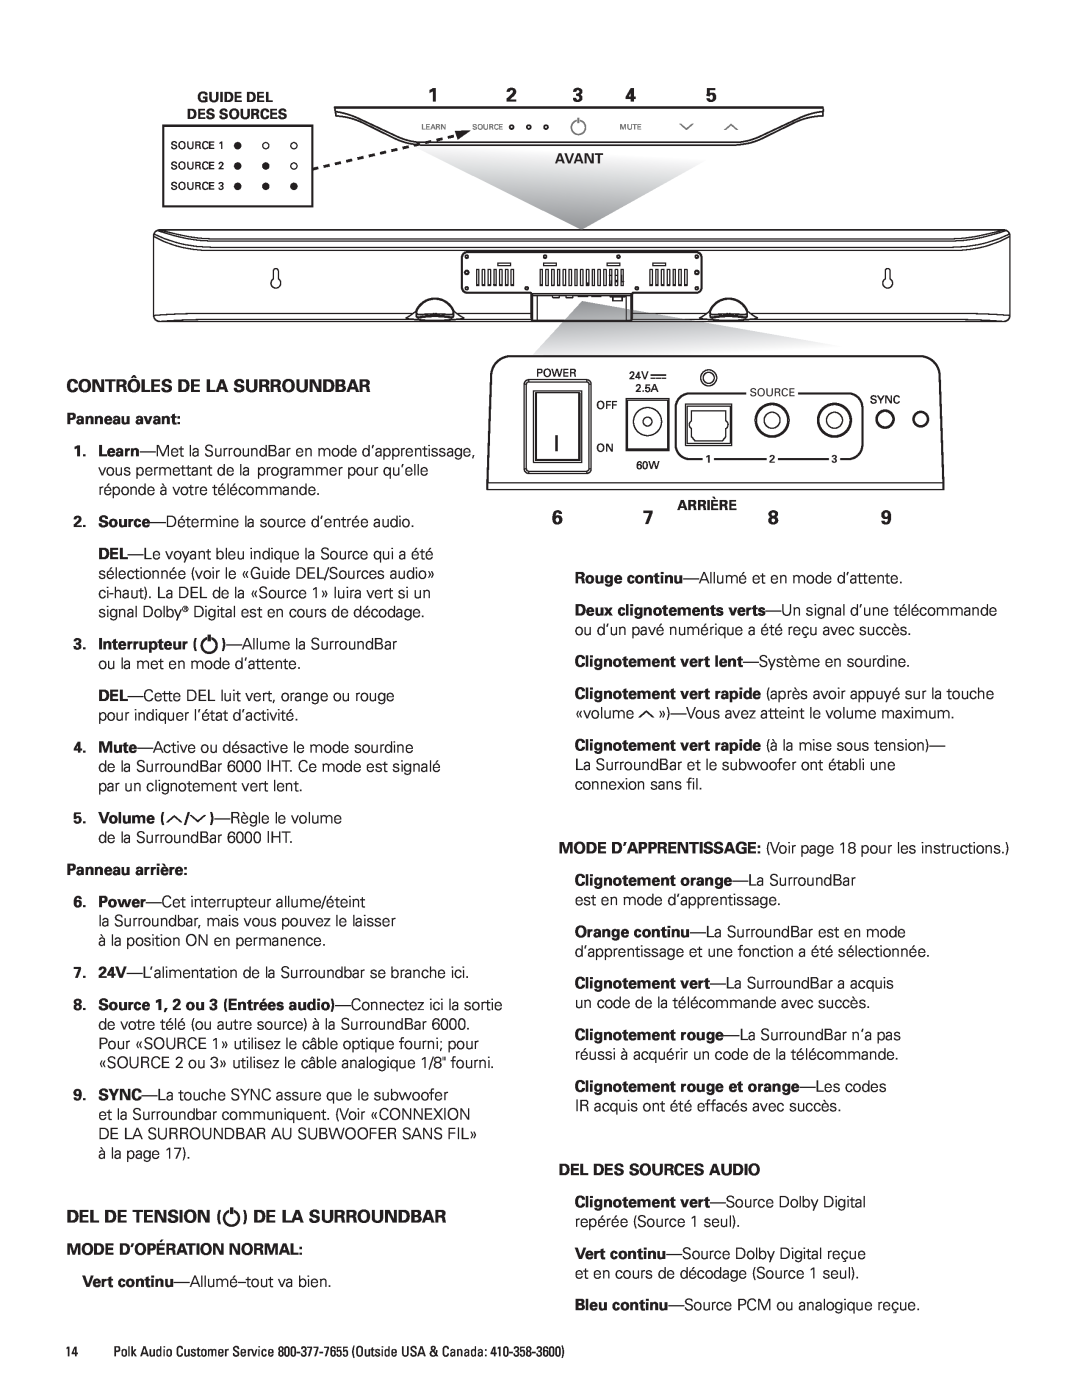 Polk Audio AM1600-A manual Contrôles De La Surroundbar, Del De Tension De La Surroundbar 